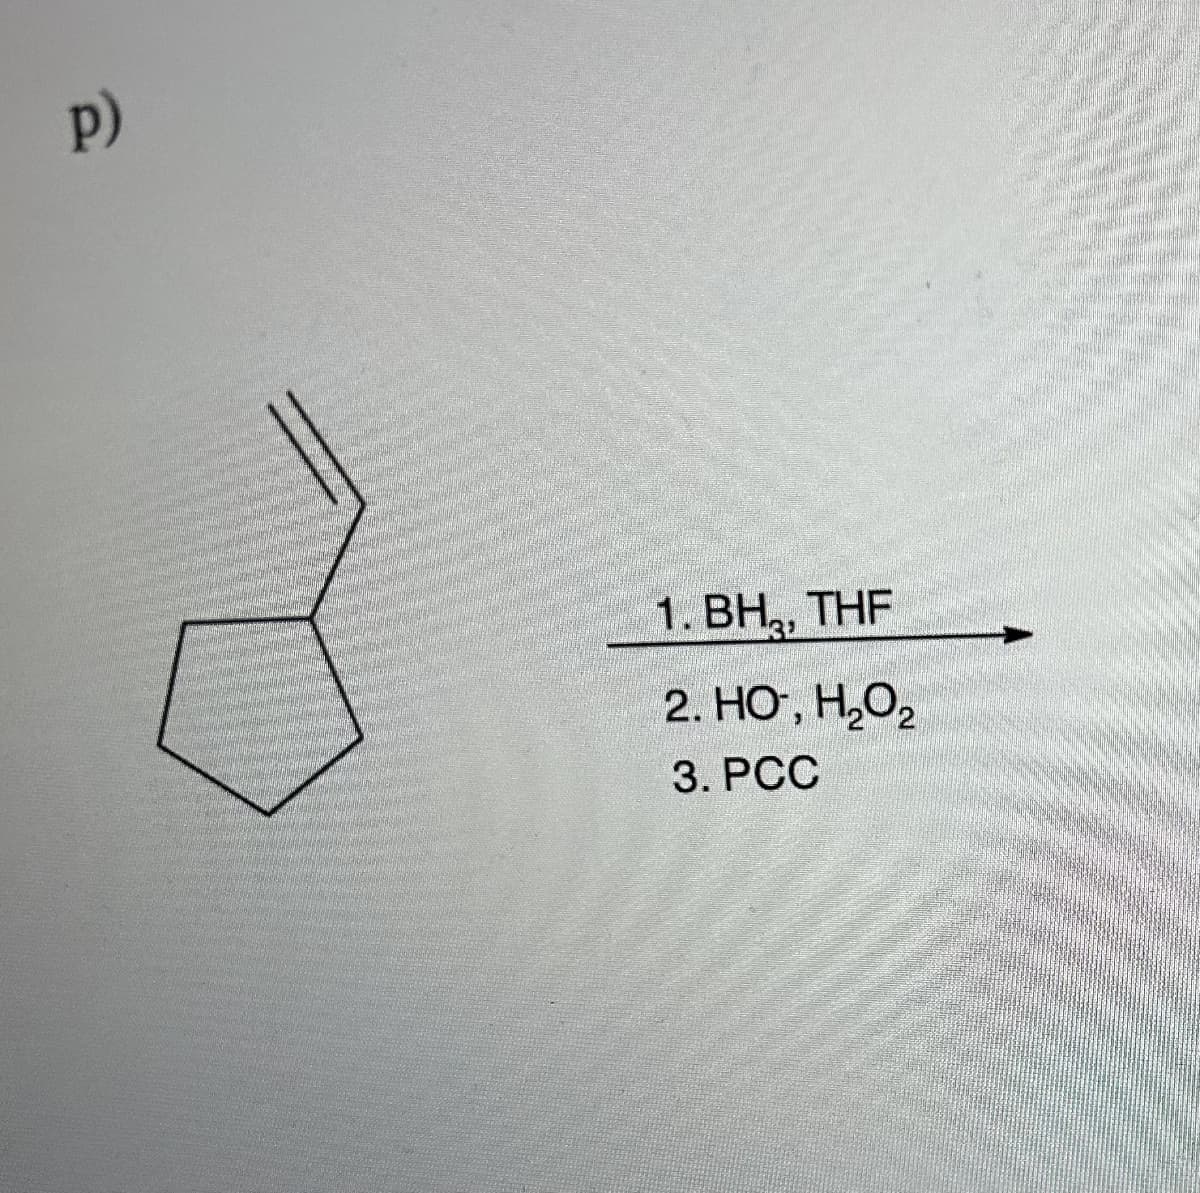 p)
1. BH, THF
2. HO, H₂O₂
3. PCC